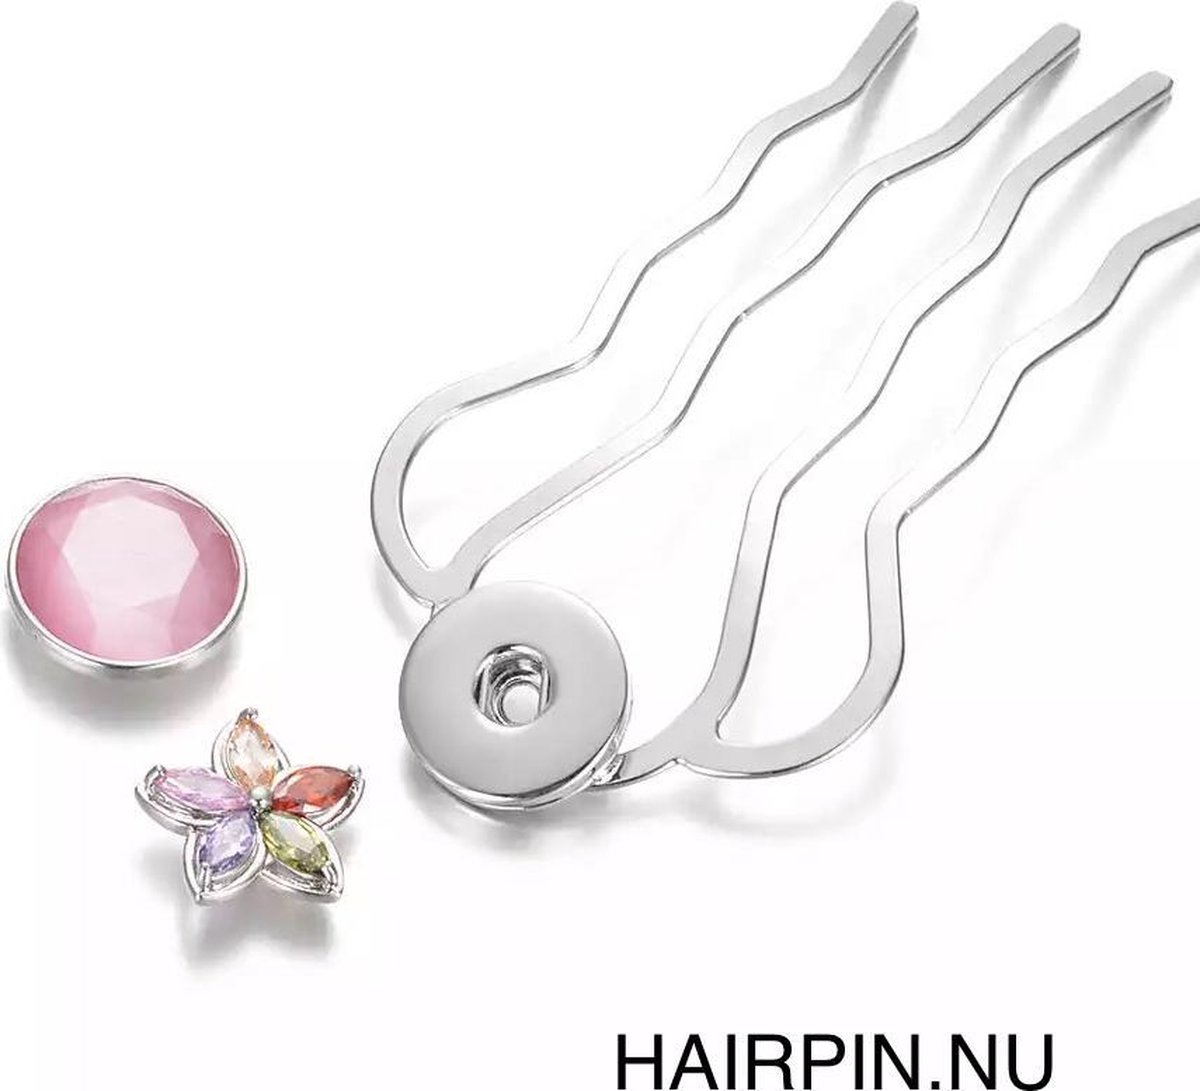 Hairpin - Hairfork - Hairaccessoire - incl. 3 gratis buttons